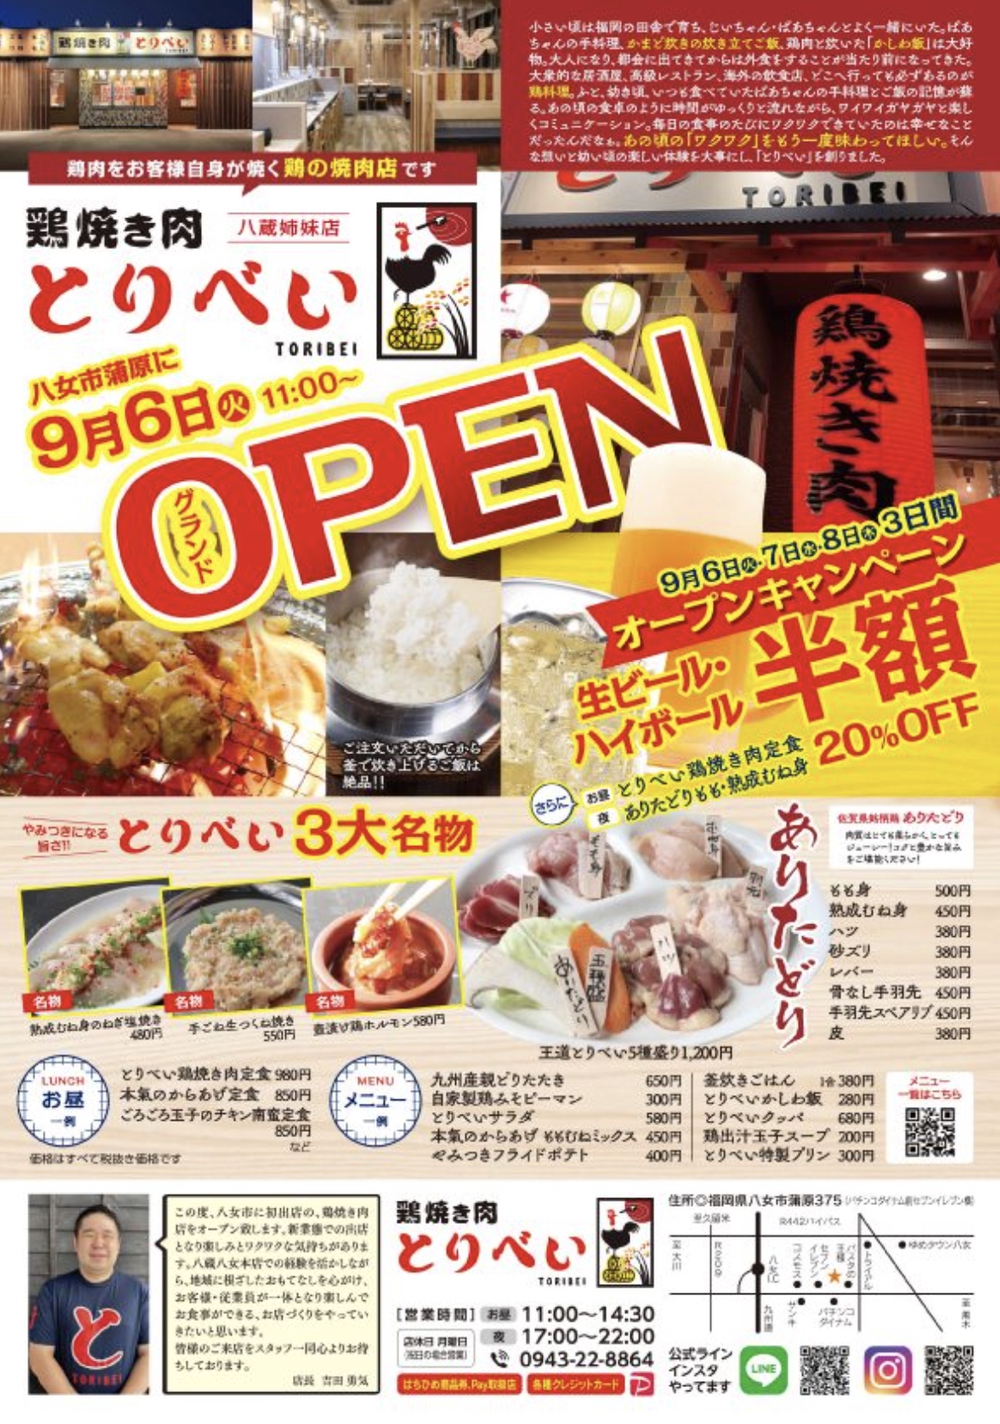 鶏焼き肉とりべい 八女本店 9月6日オープン！鶏焼き肉のお店【八女市】